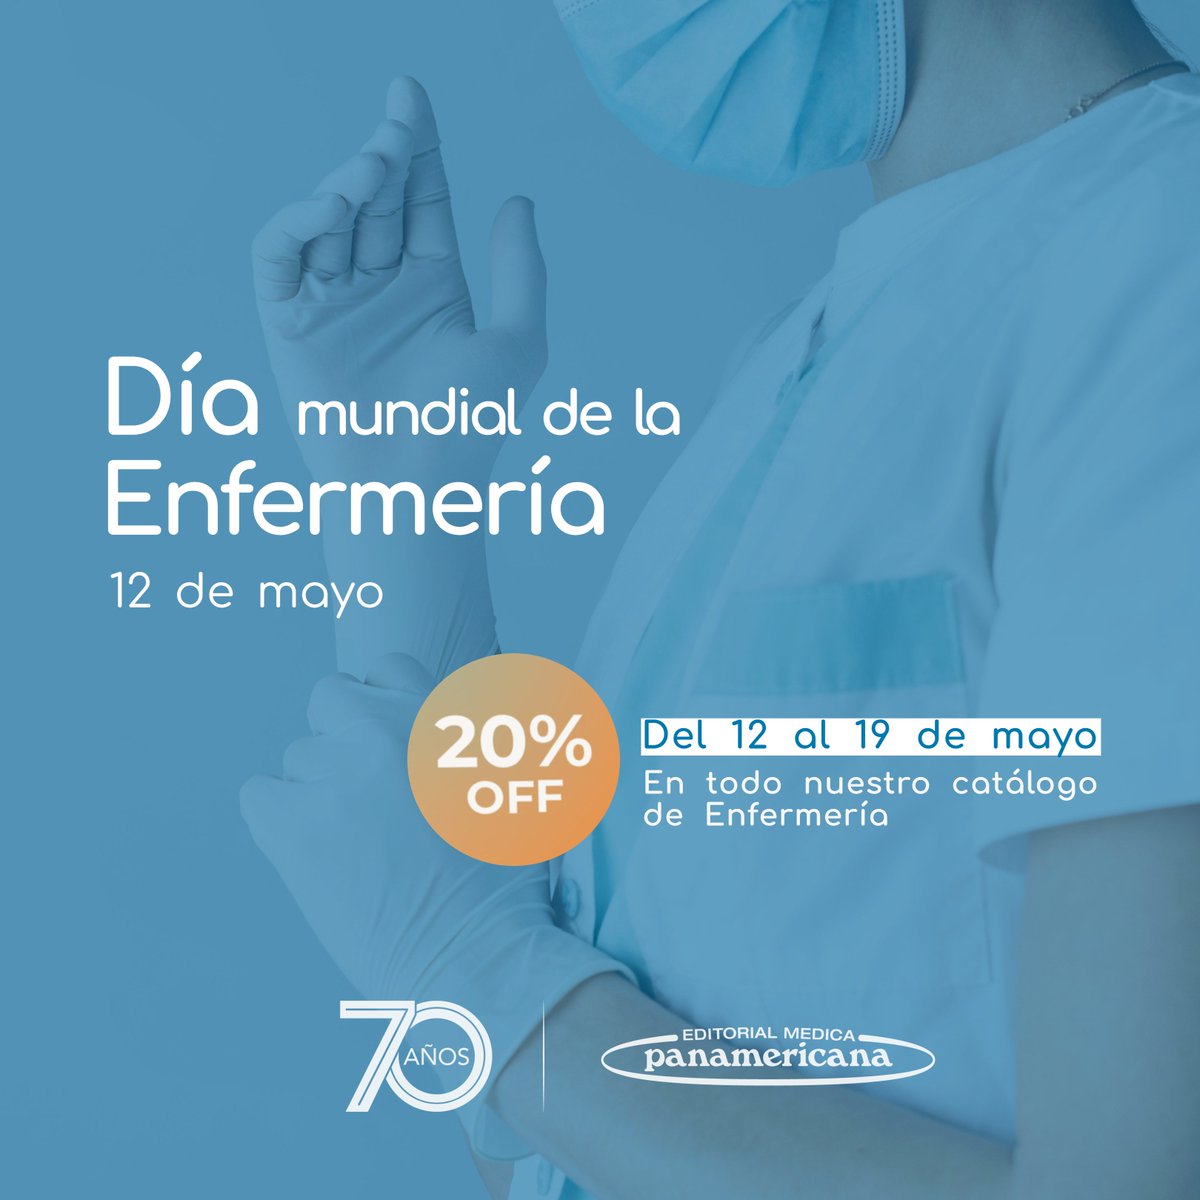 ¡Celebremos juntos el Día Mundial de la Enfermería! 🌟

🎉 Del 12 al 19 de mayo, disfruta de un 20% de descuento en todos nuestros materiales relacionados con enfermería. 

🔗medicapanamericana.com/co/profesional…

#DiaMundialDeLaEnfermeria #CuidadoDeLaSalud #OfertaEspecial